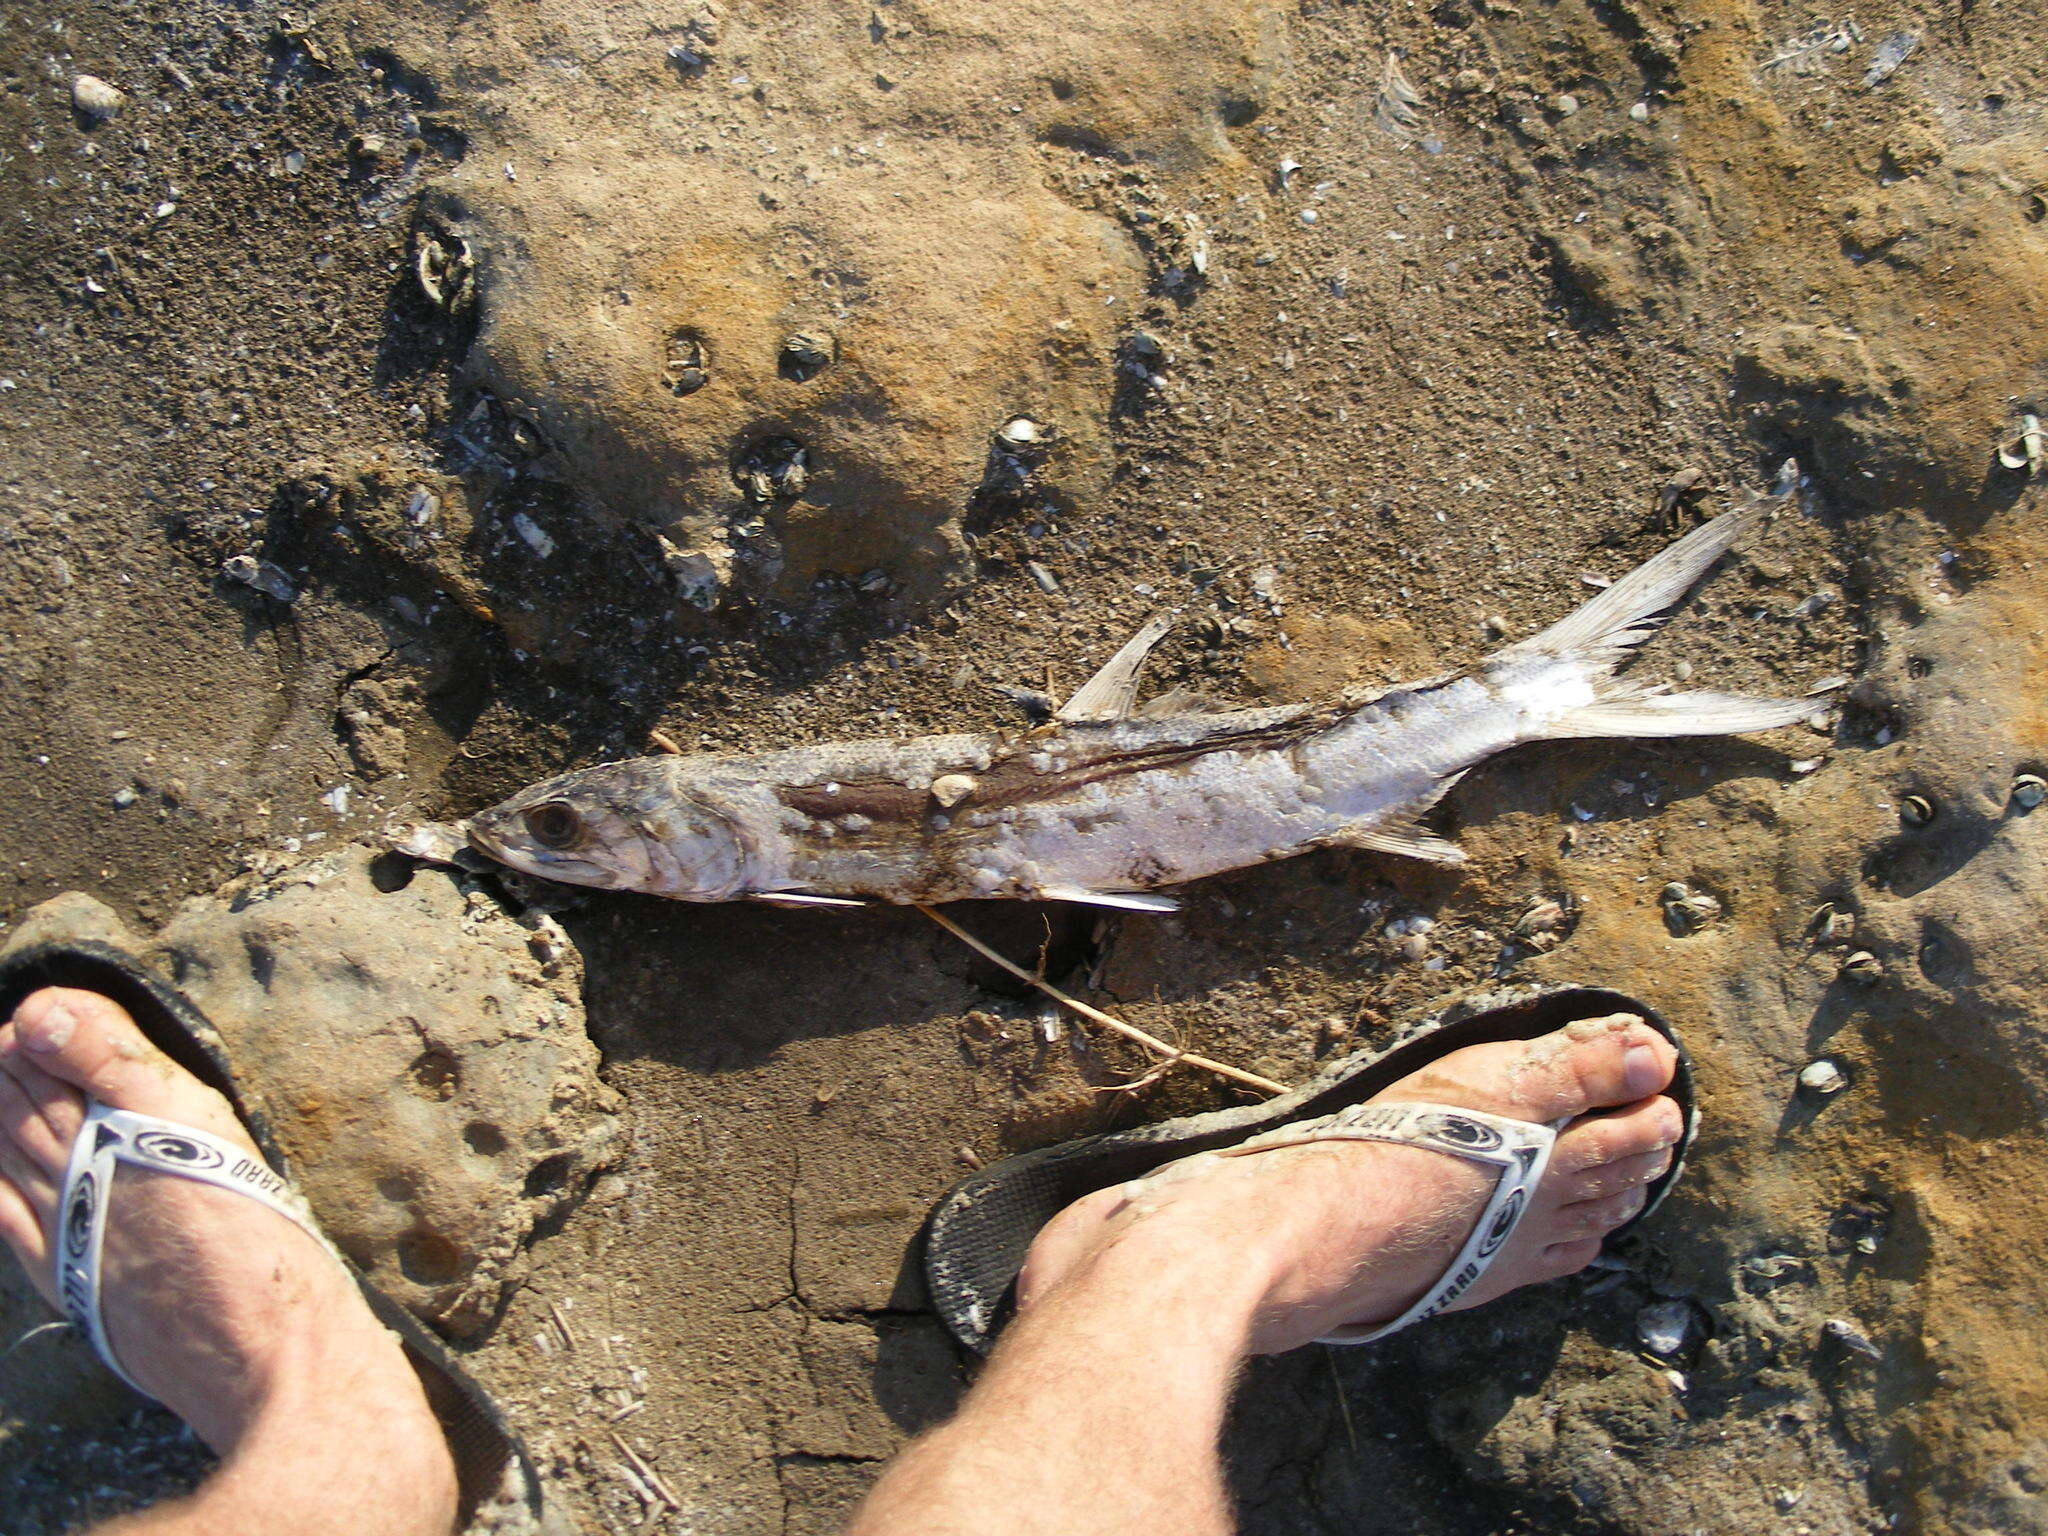 Image of Australian giant herring